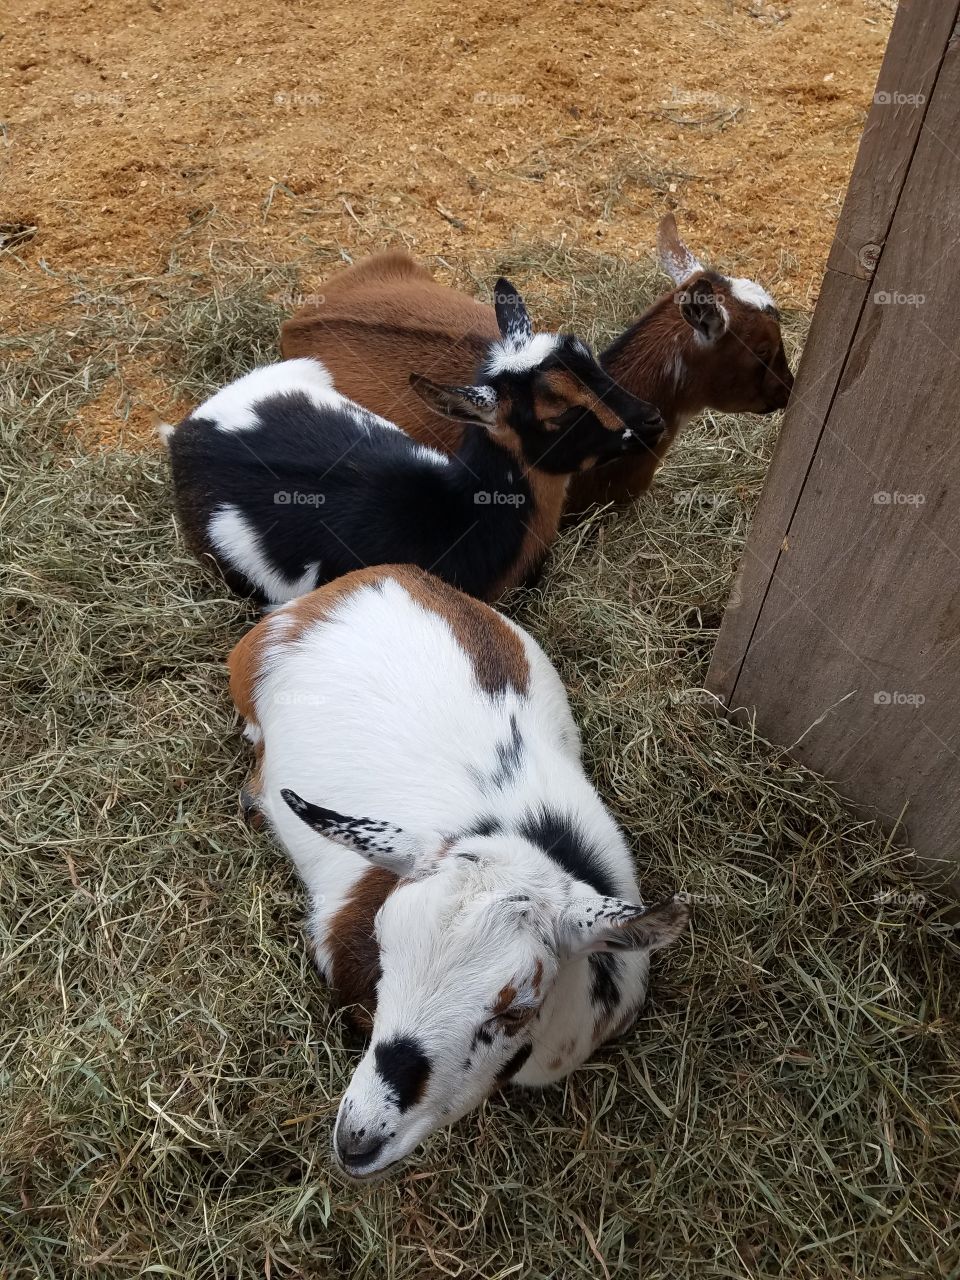 lazy goats